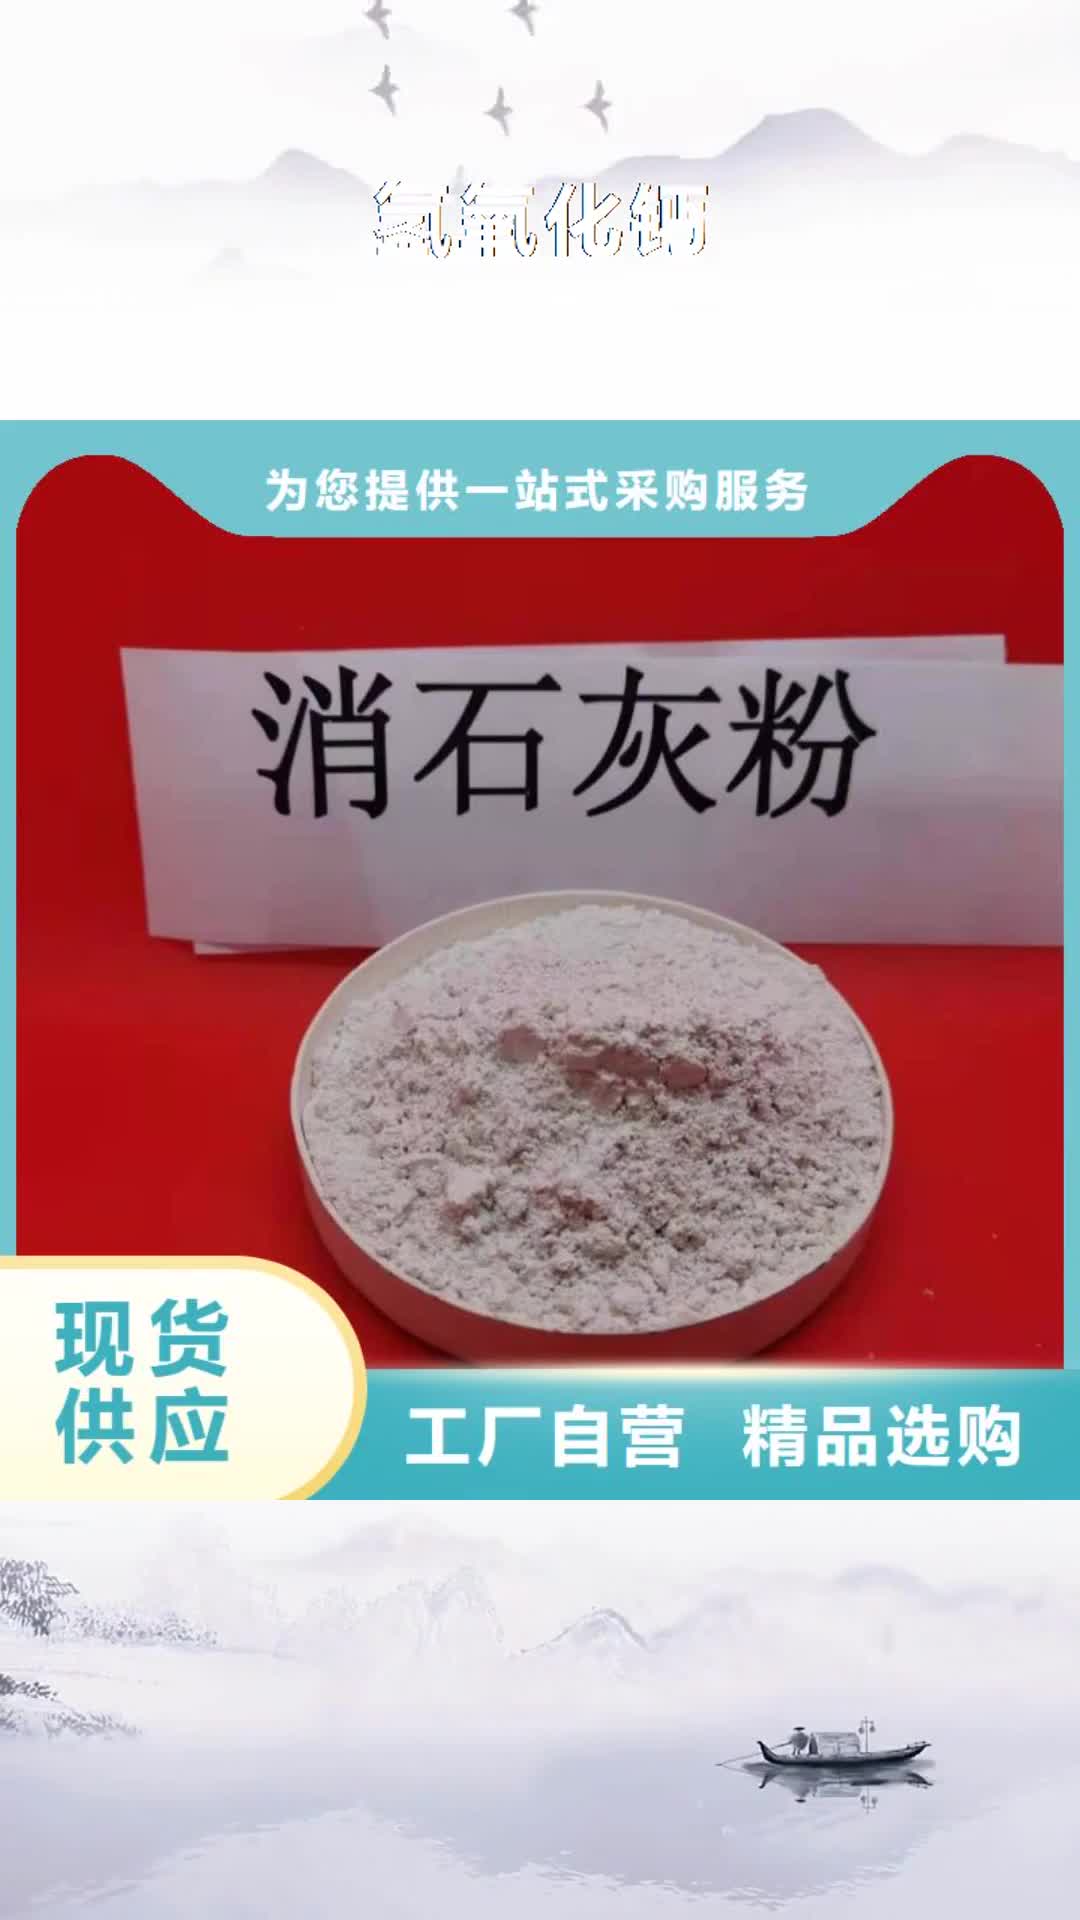 葫芦岛 氢氧化钙,【白灰粉】研发生产销售